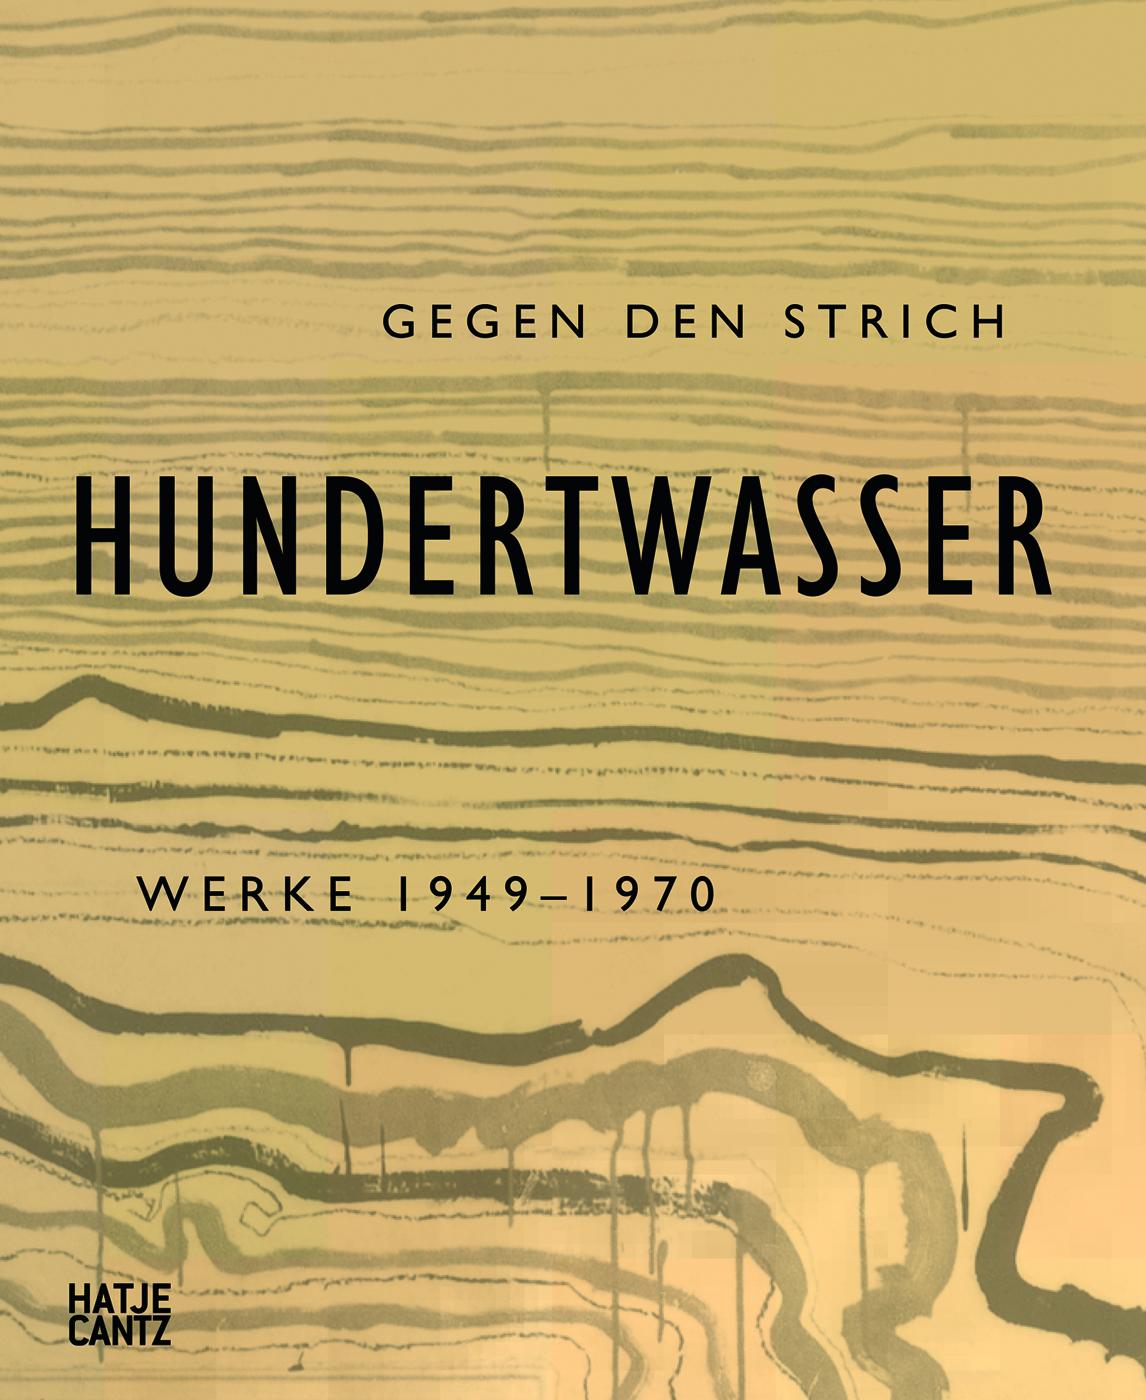 Friedensreich Hundertwasser. Gegen den Strich. Werke 1949-1970, Bild: Ostfildern: Hatje Cantz, 2012..